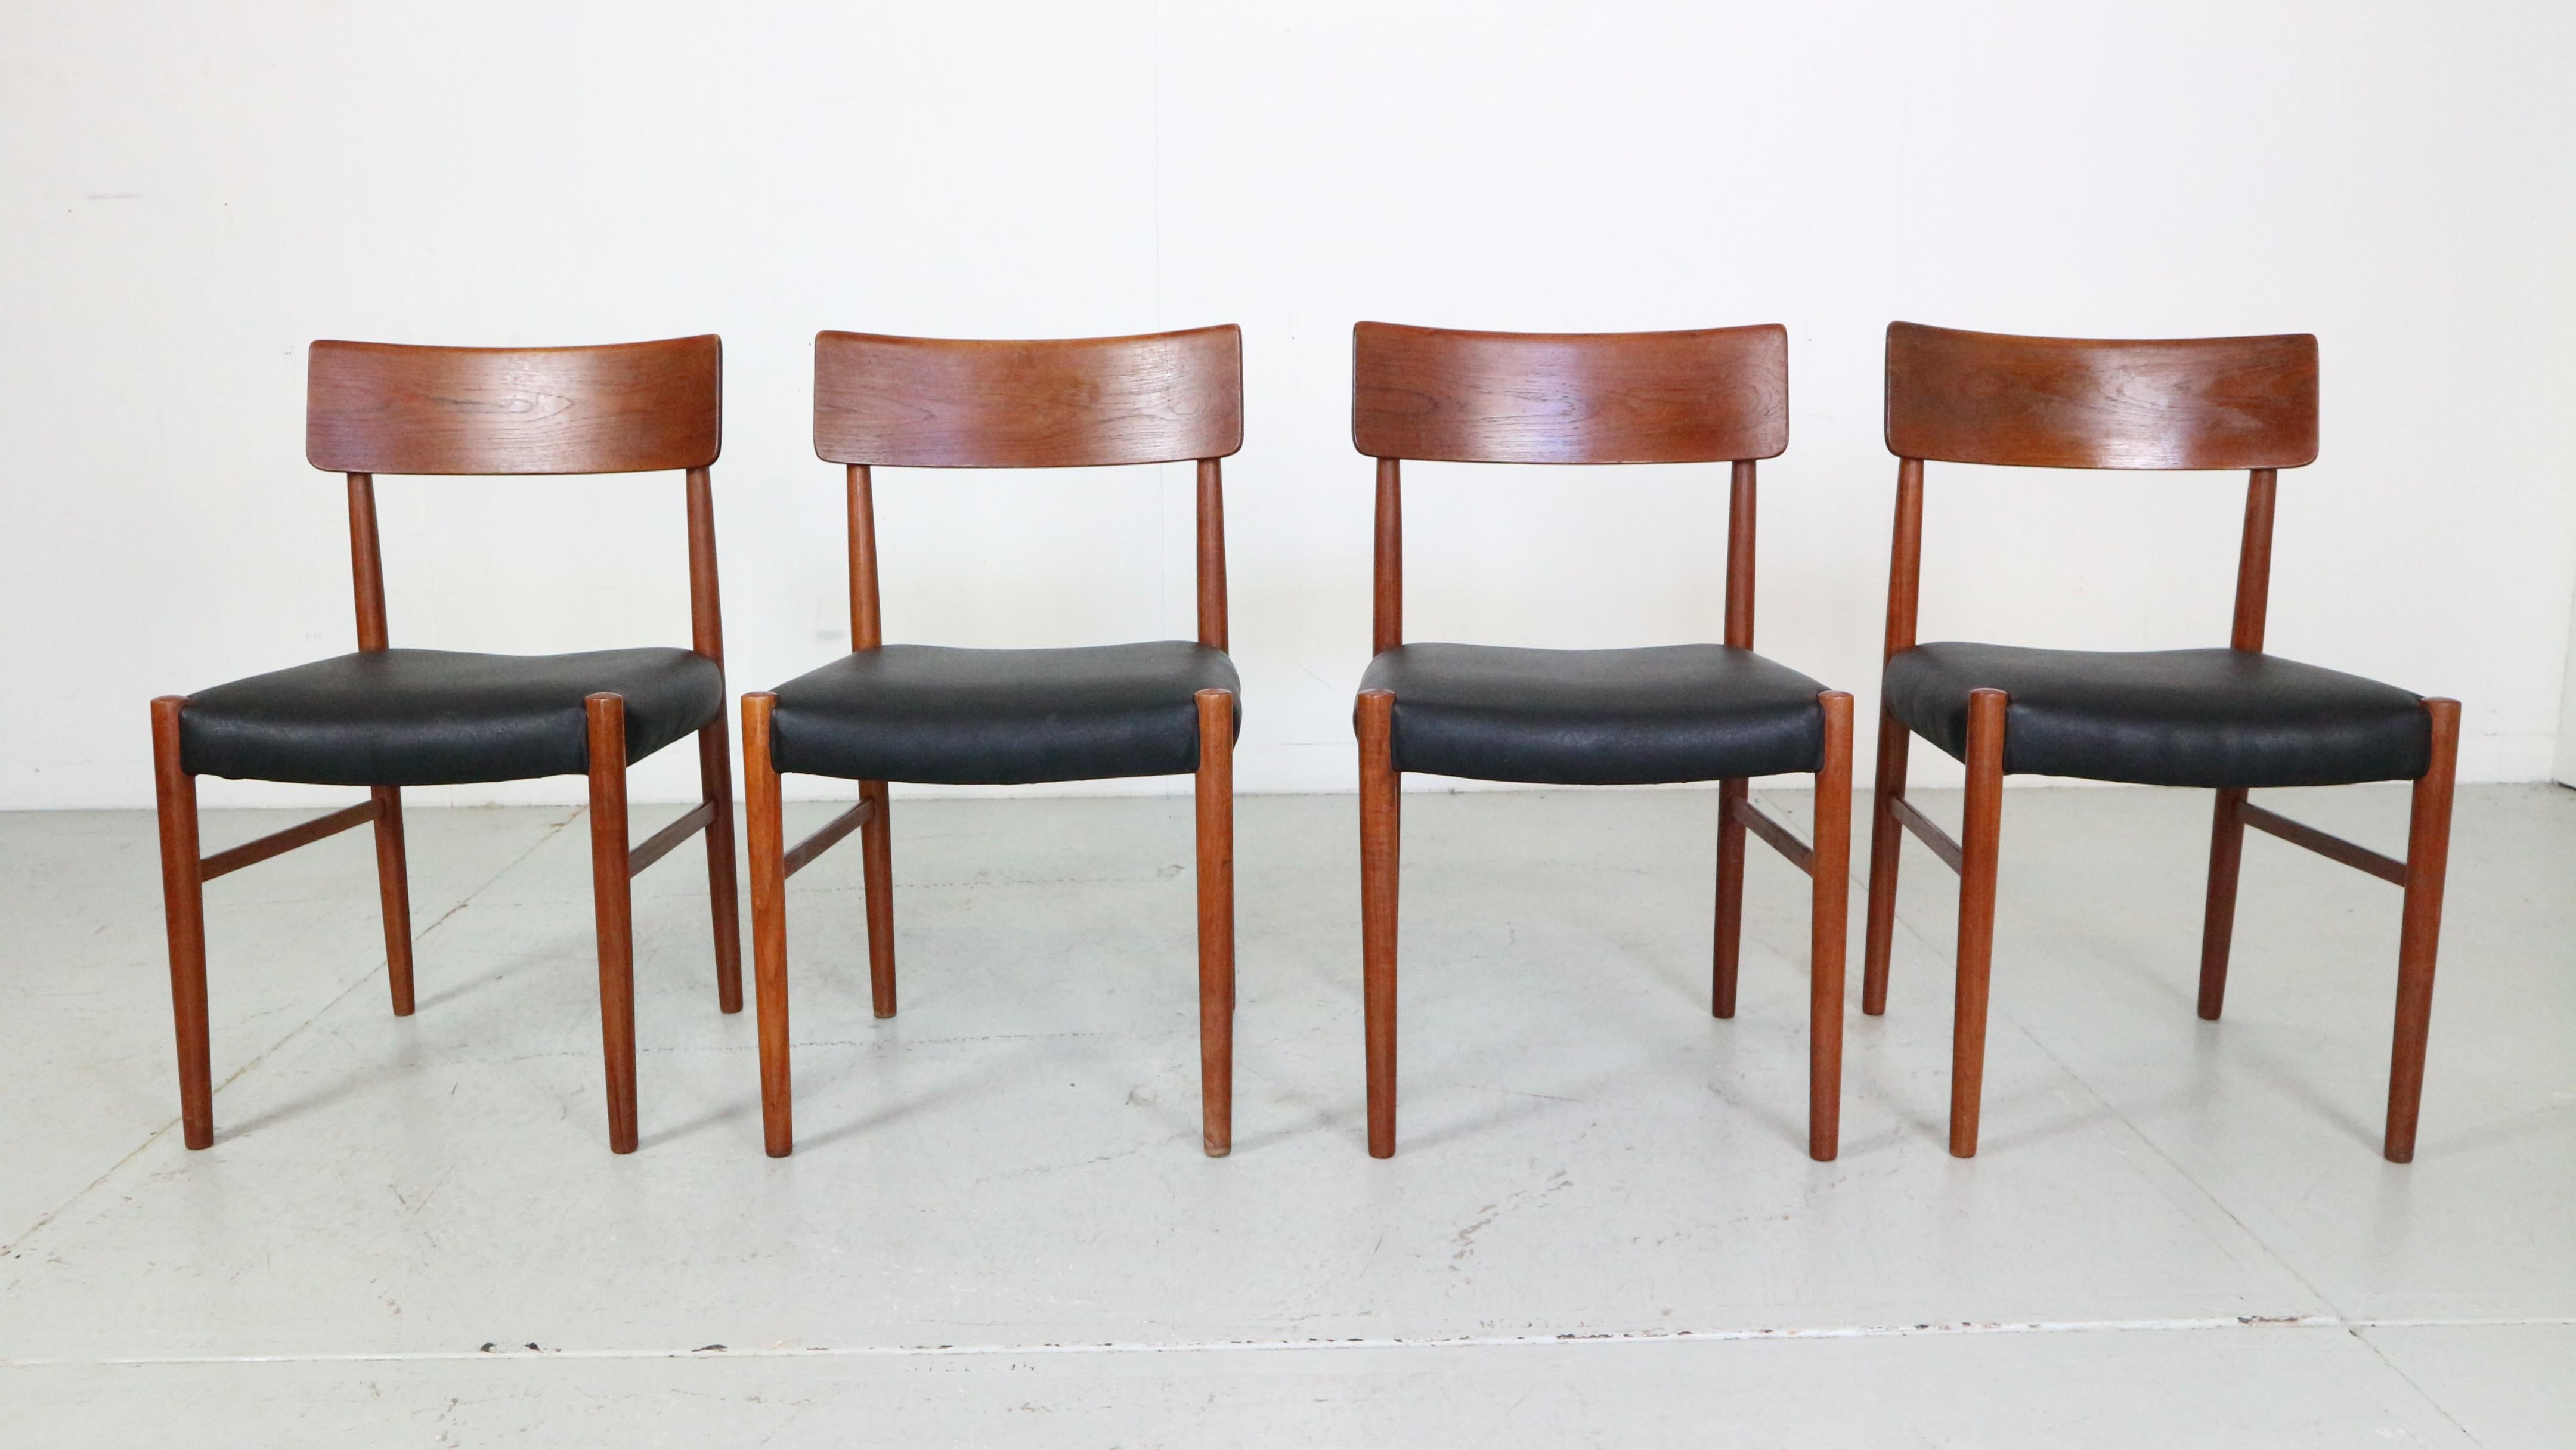 Ensemble de 4 chaises de salle à manger de style moderne du milieu du siècle dernier, fabriquées dans les années 1960 au Danemark. 
Cet ensemble est en très bon état d'origine.
Le cadre est en bois de teck massif courbé. 
Les sièges très